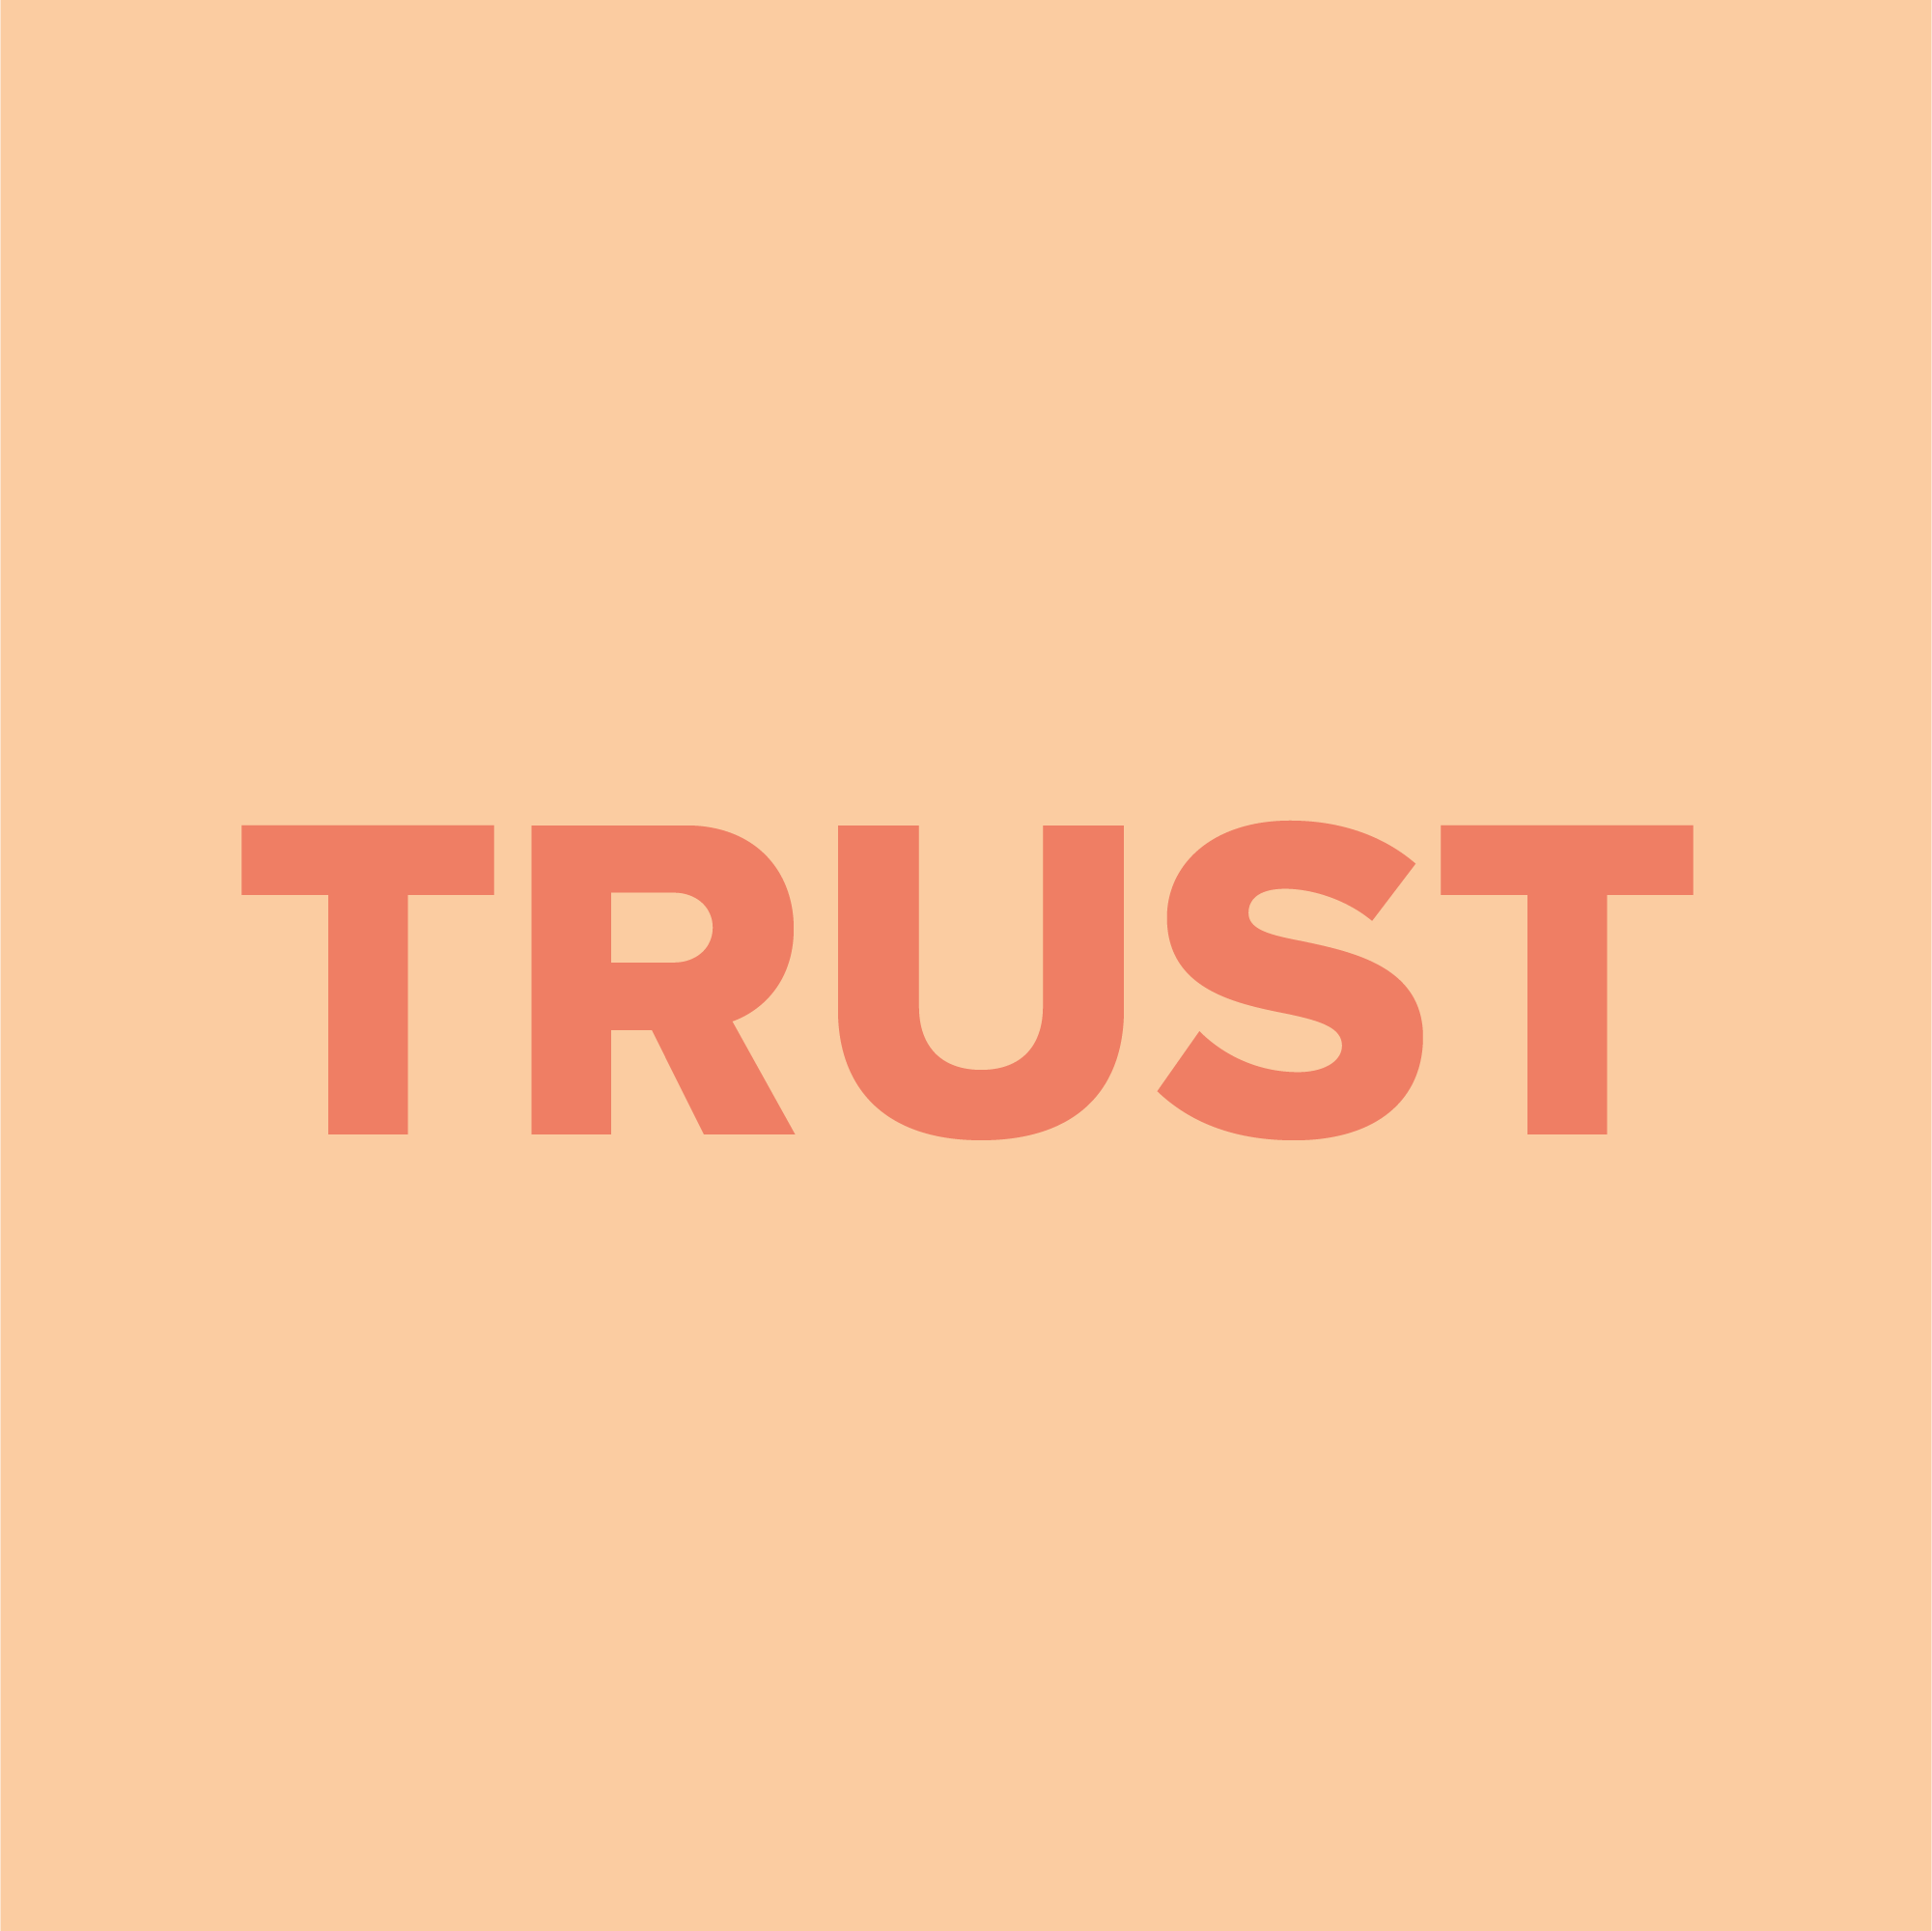 Dieses Bild enthält den Text "Trust" (Vertrauen).